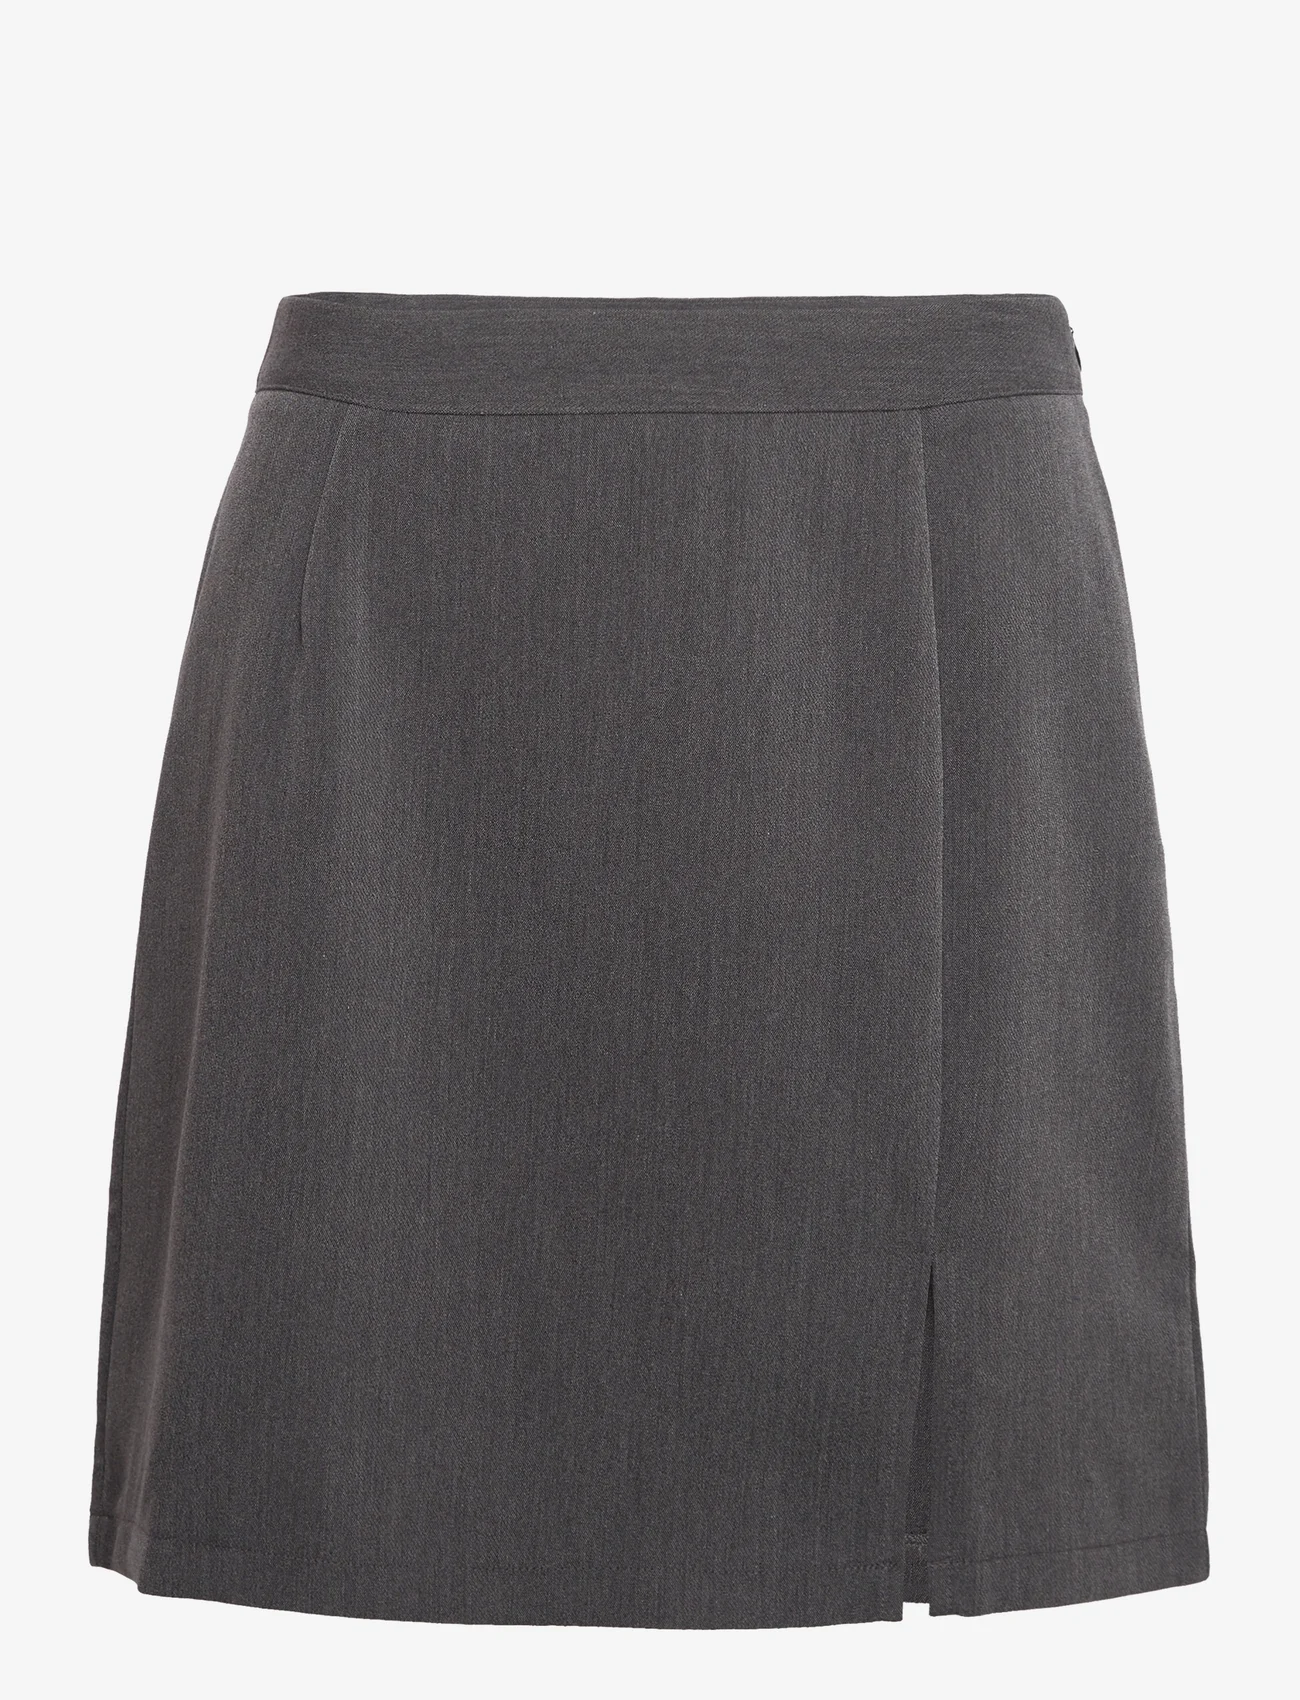 A-View - Annali skirt-1 - short skirts - grey - 0